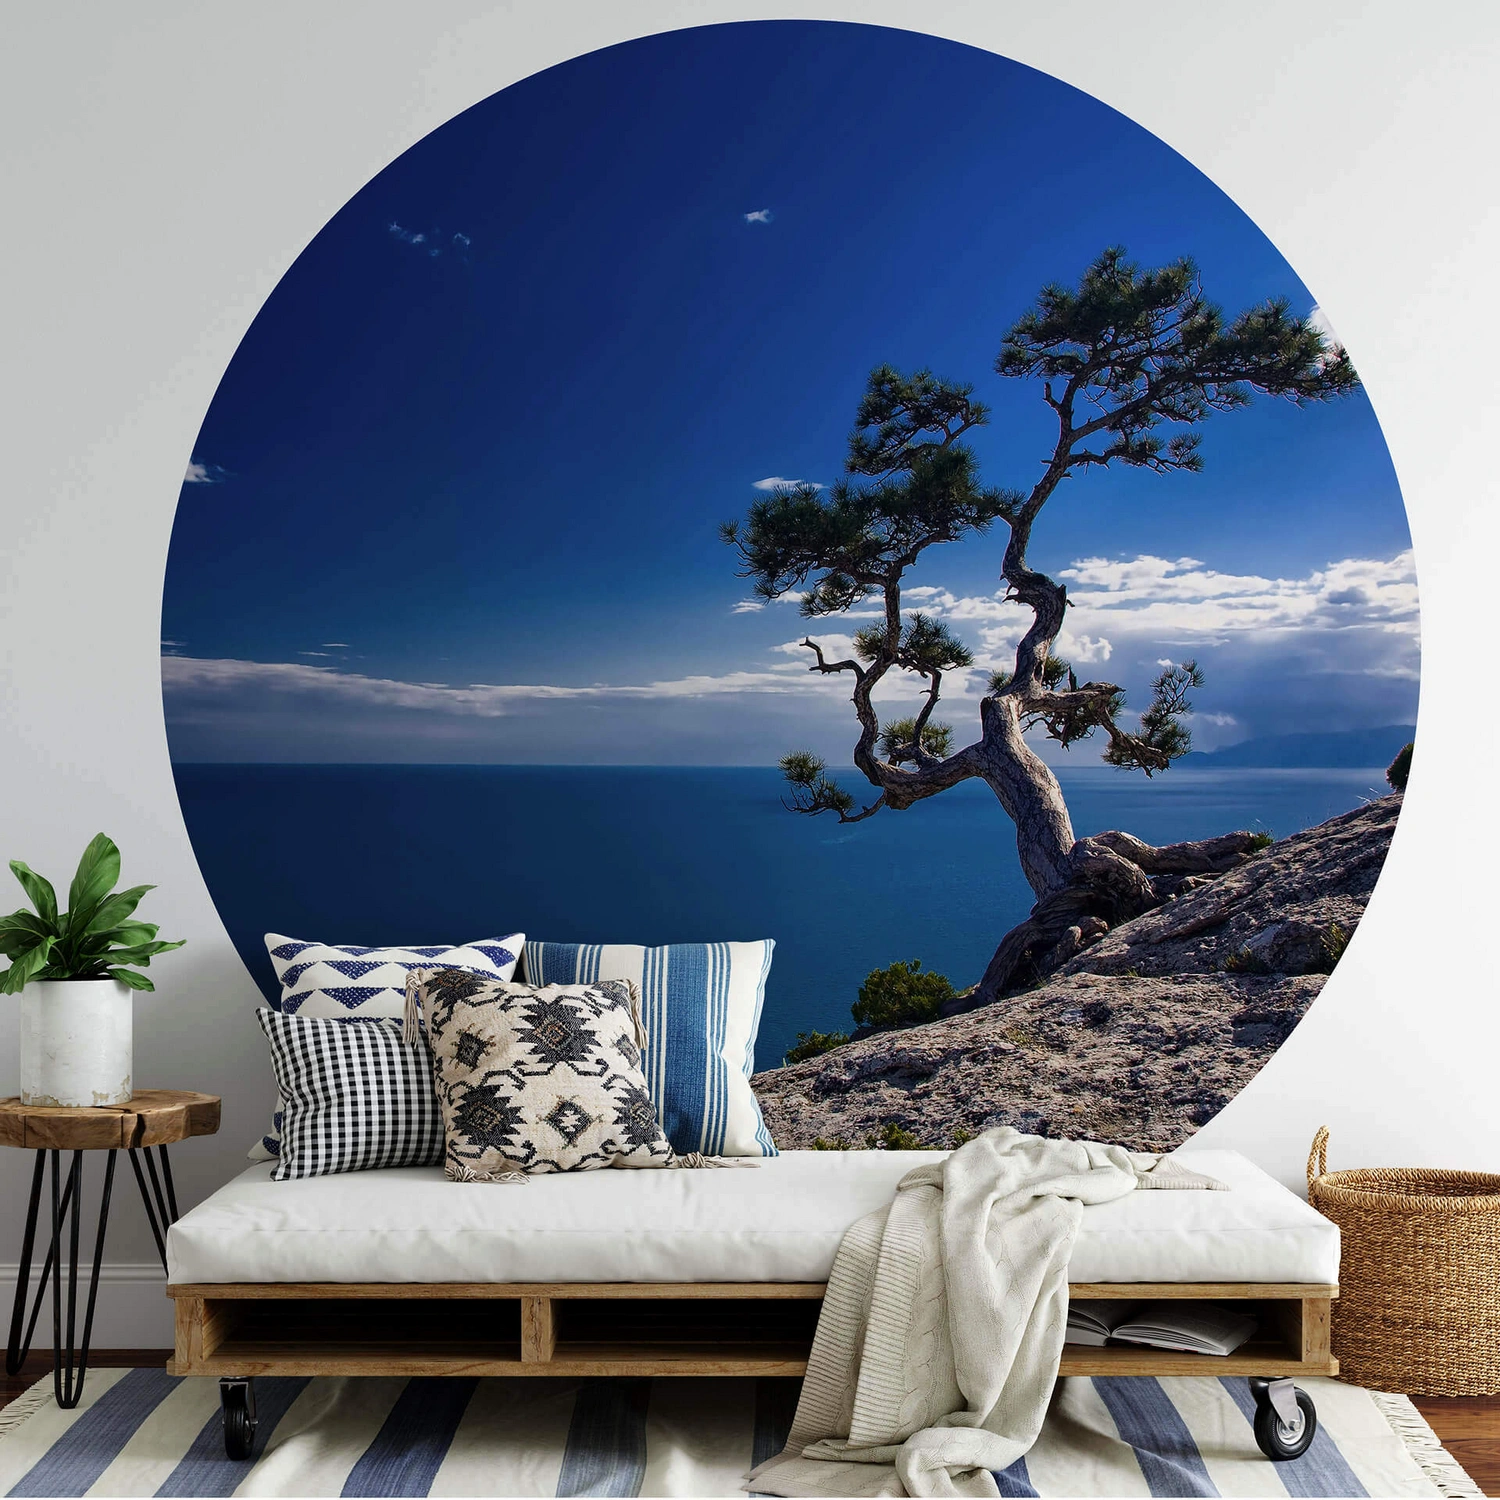 K&L Wall Art Vliestapete »Runde Vliestapete«, Baum am Meer blauer Himmel,  mehrfarbig, matt